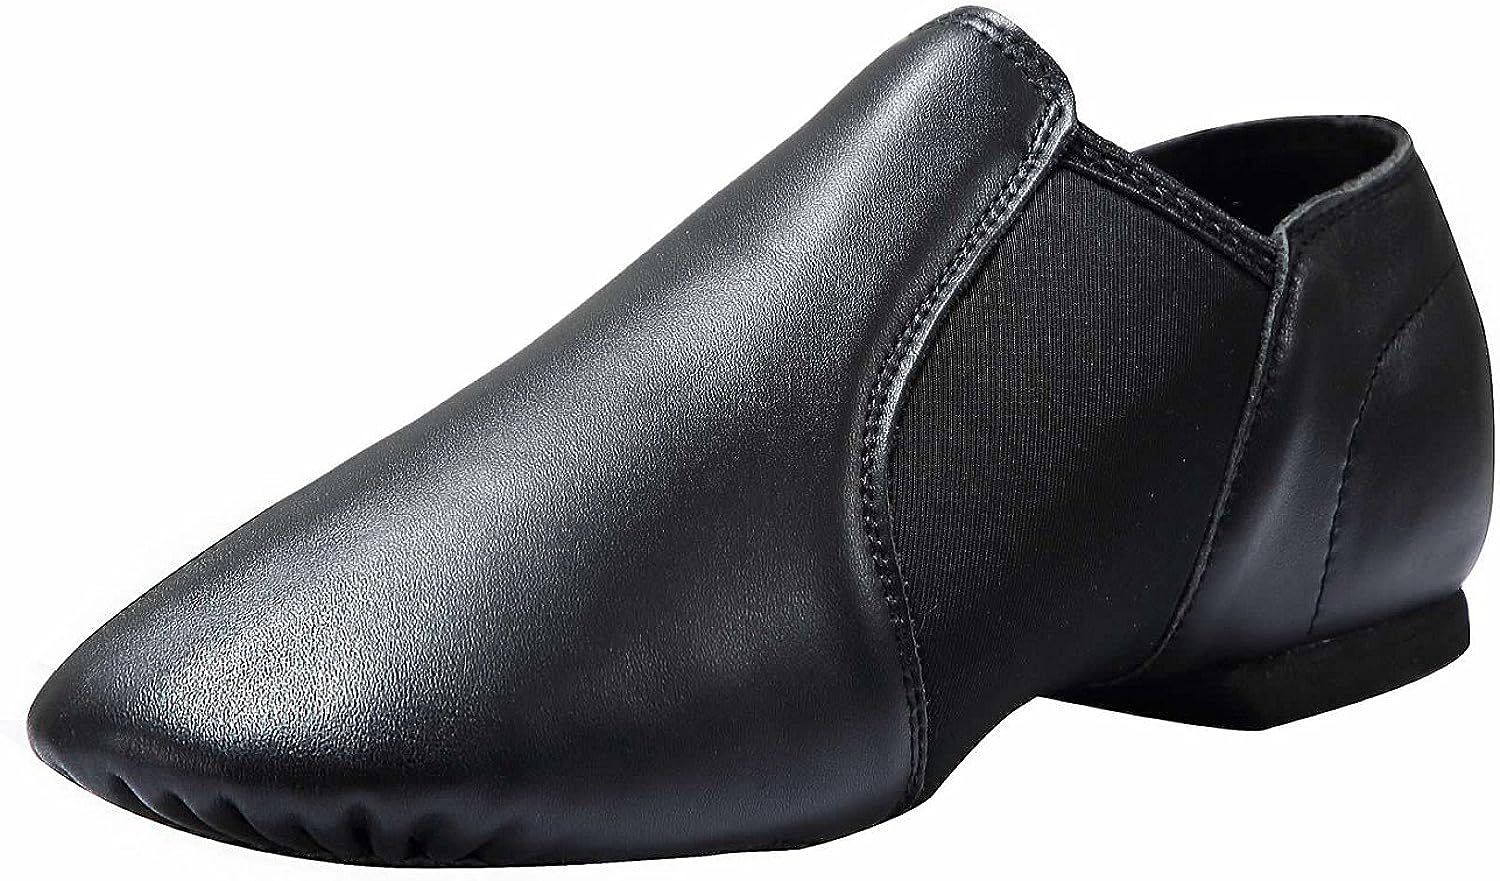 Dynadans Women's Leather Upper Slip-on Jazz Shoe